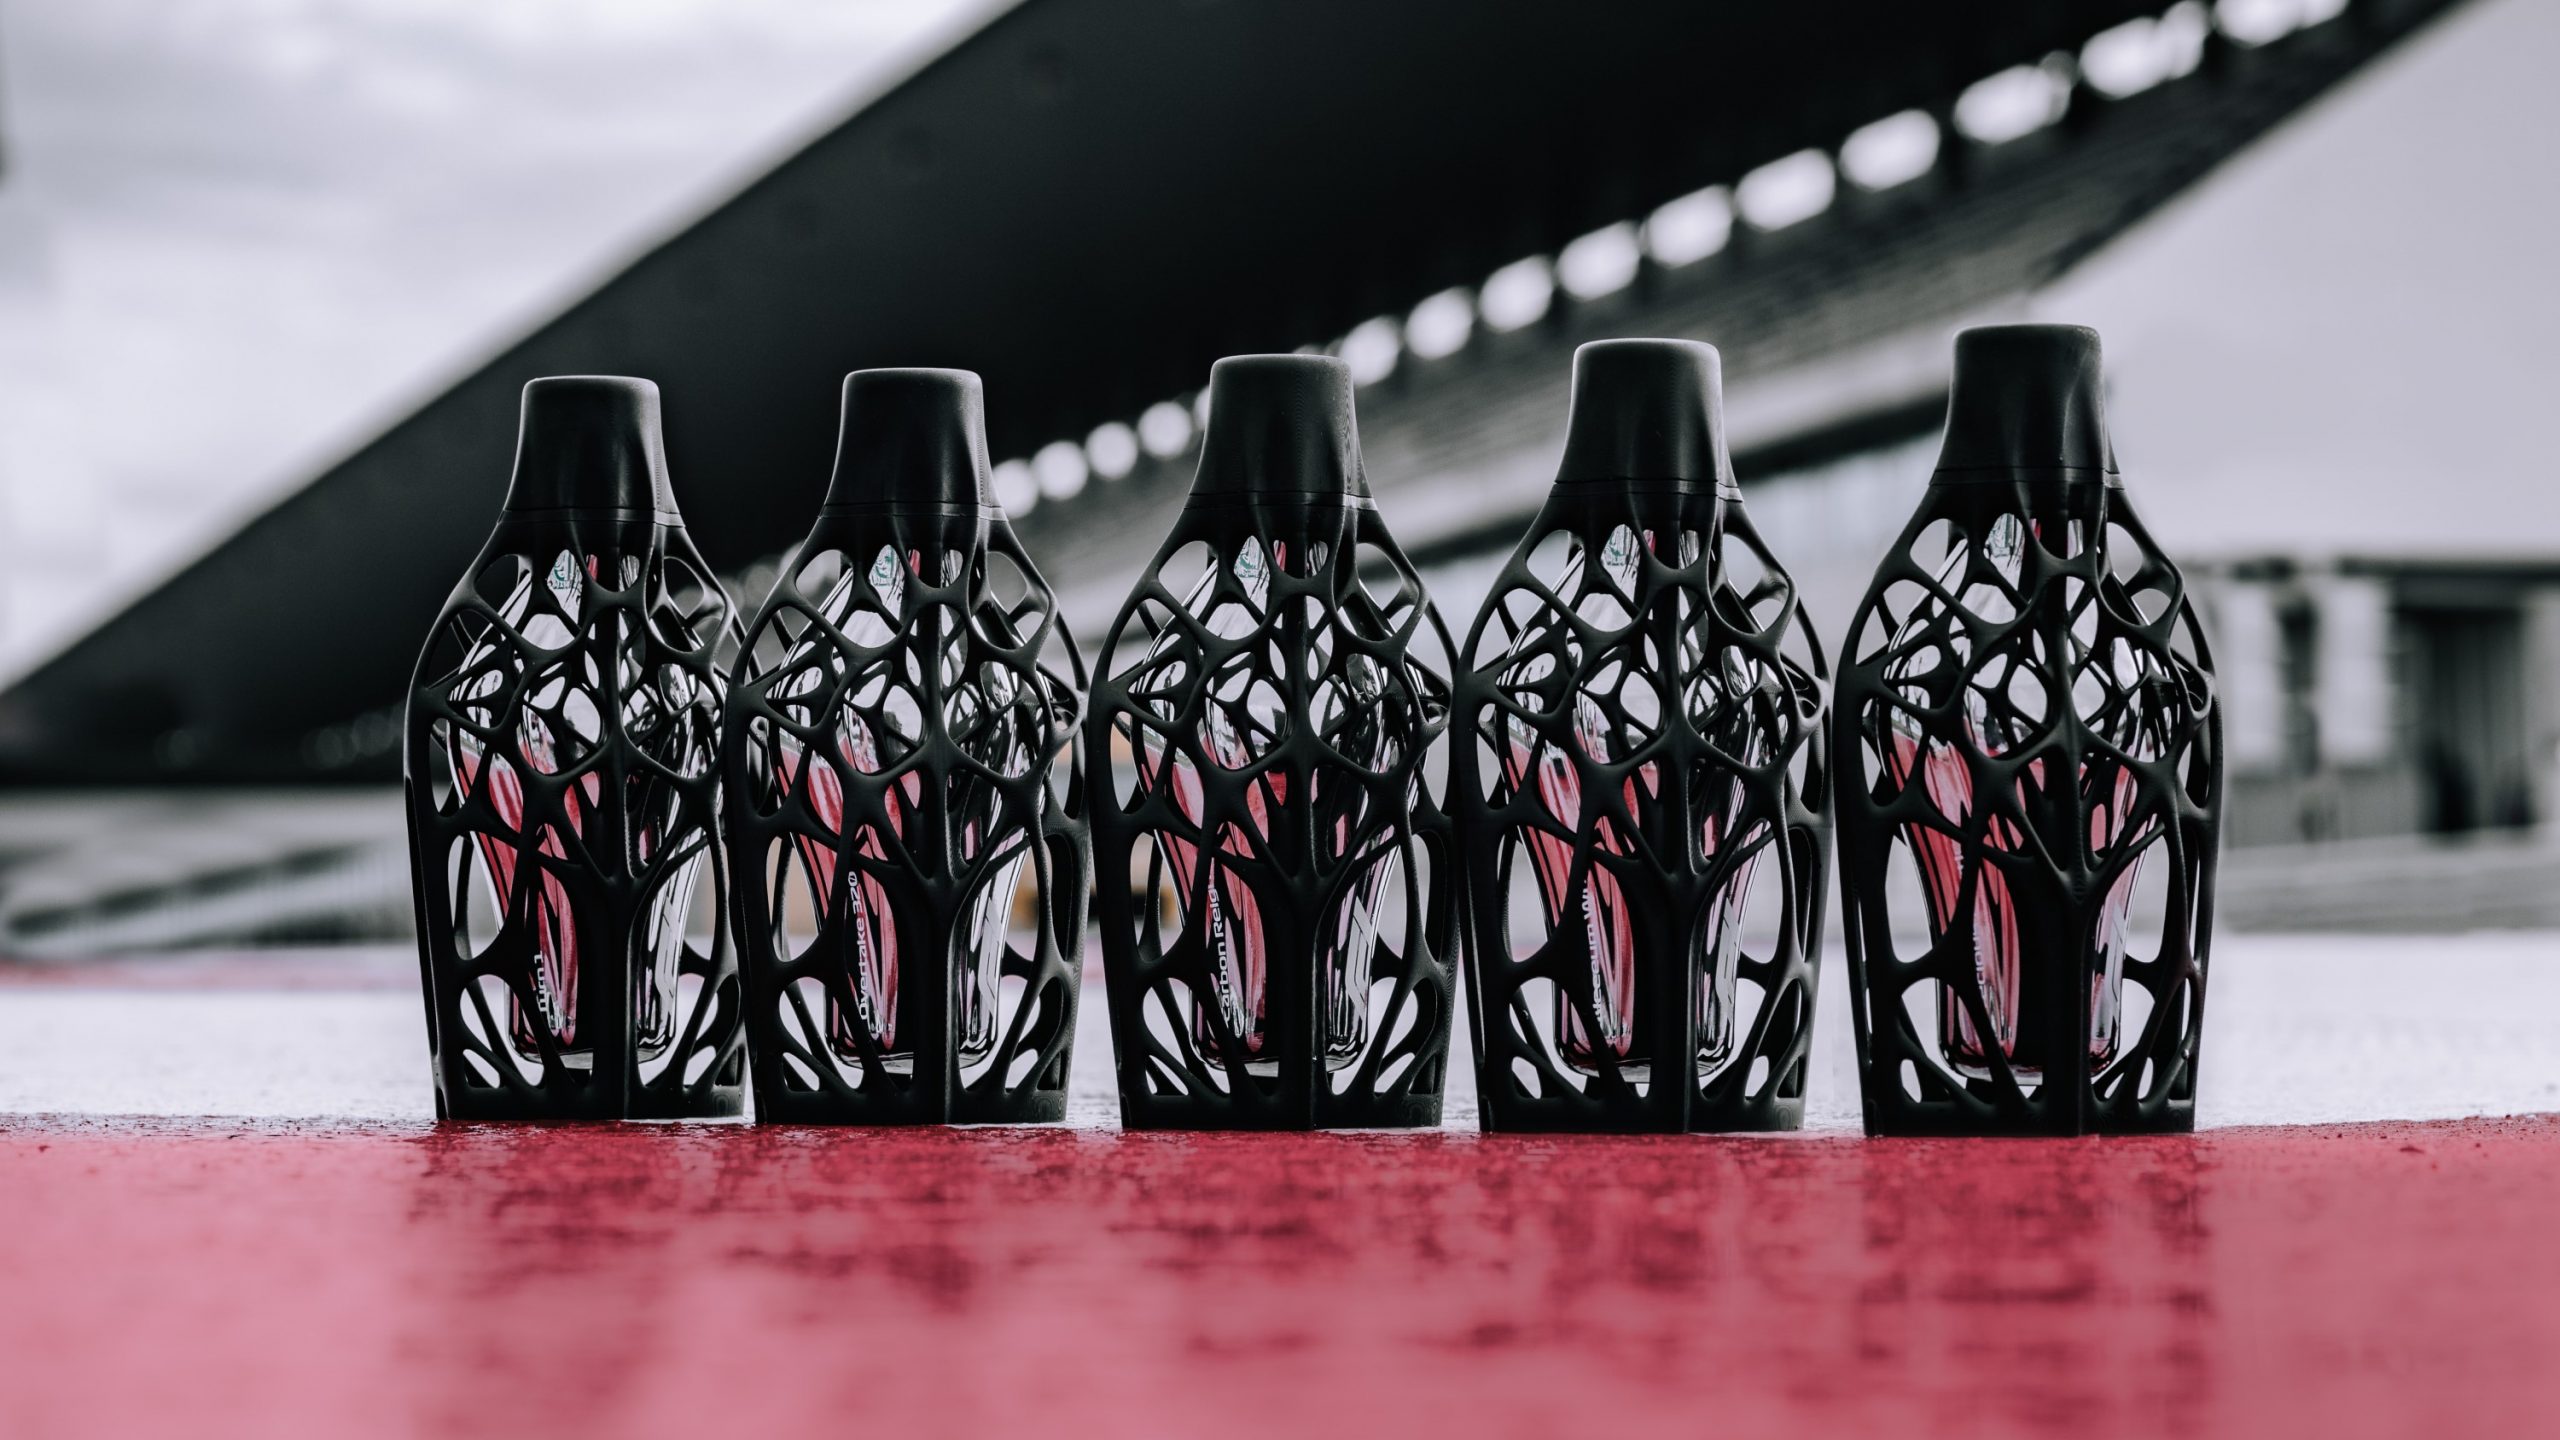 Idée cadeau : la F1 sort sa gamme de parfums